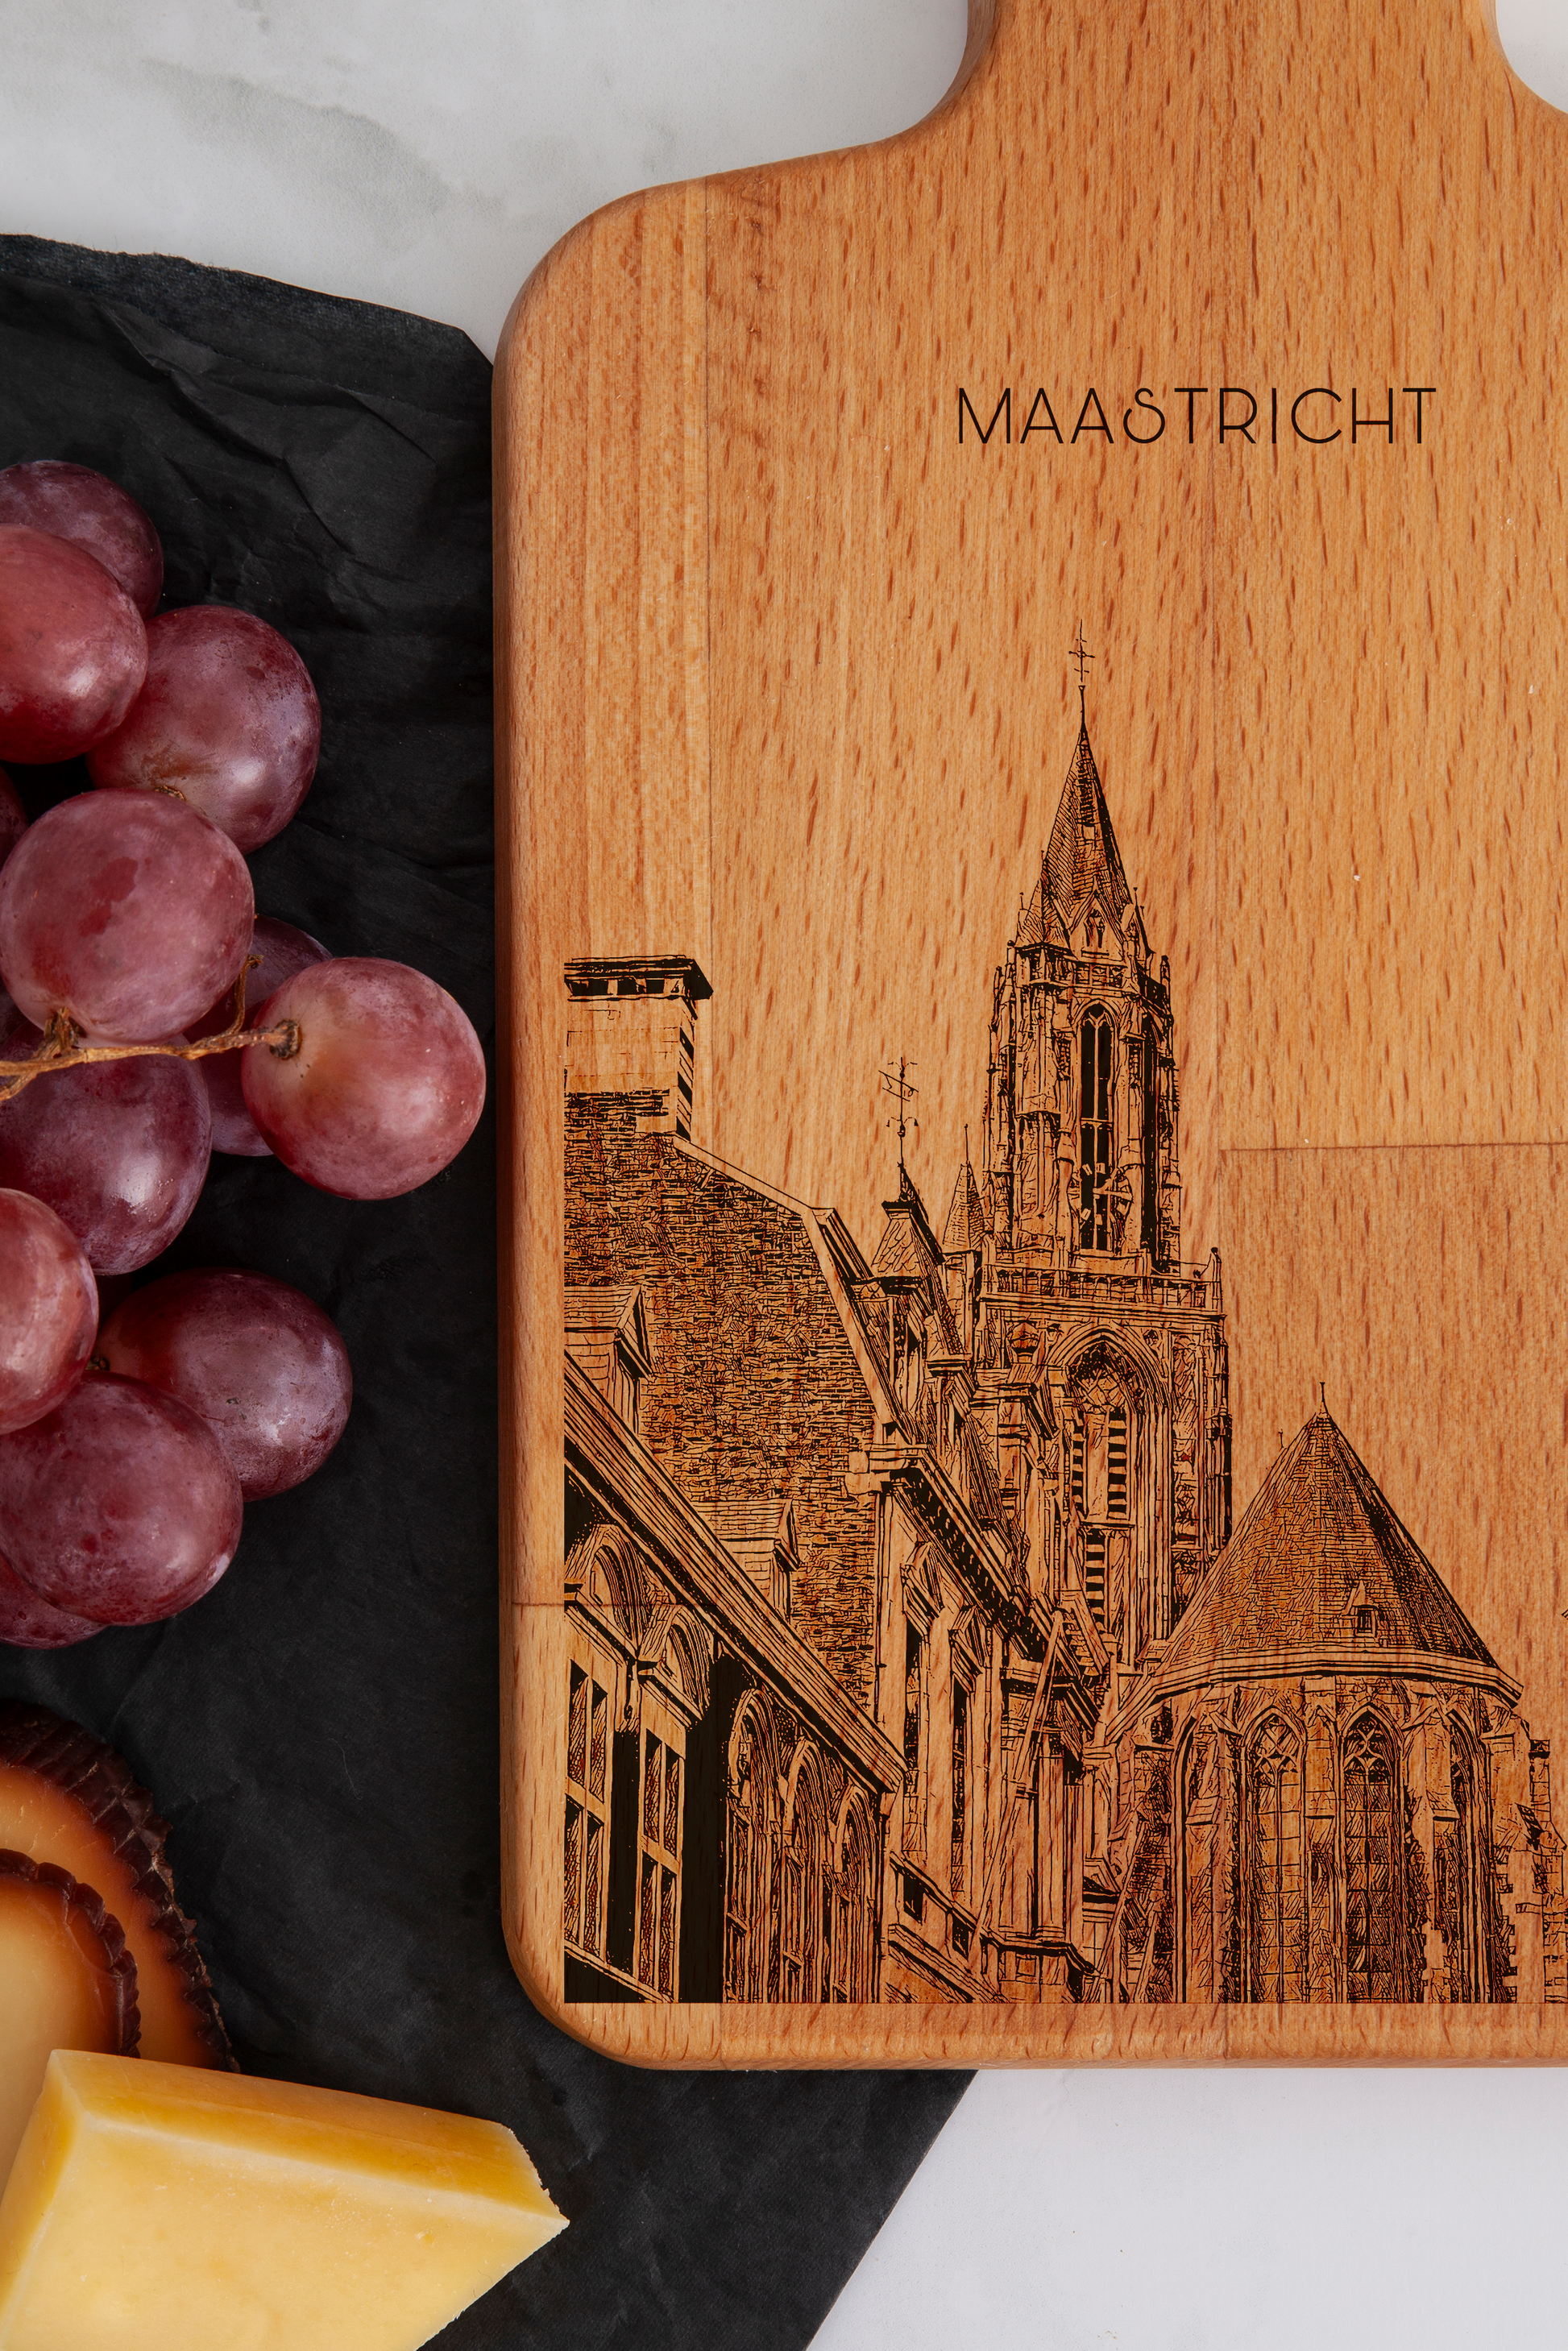 Maastricht, Sint-Janskerk, cheese board, close-up